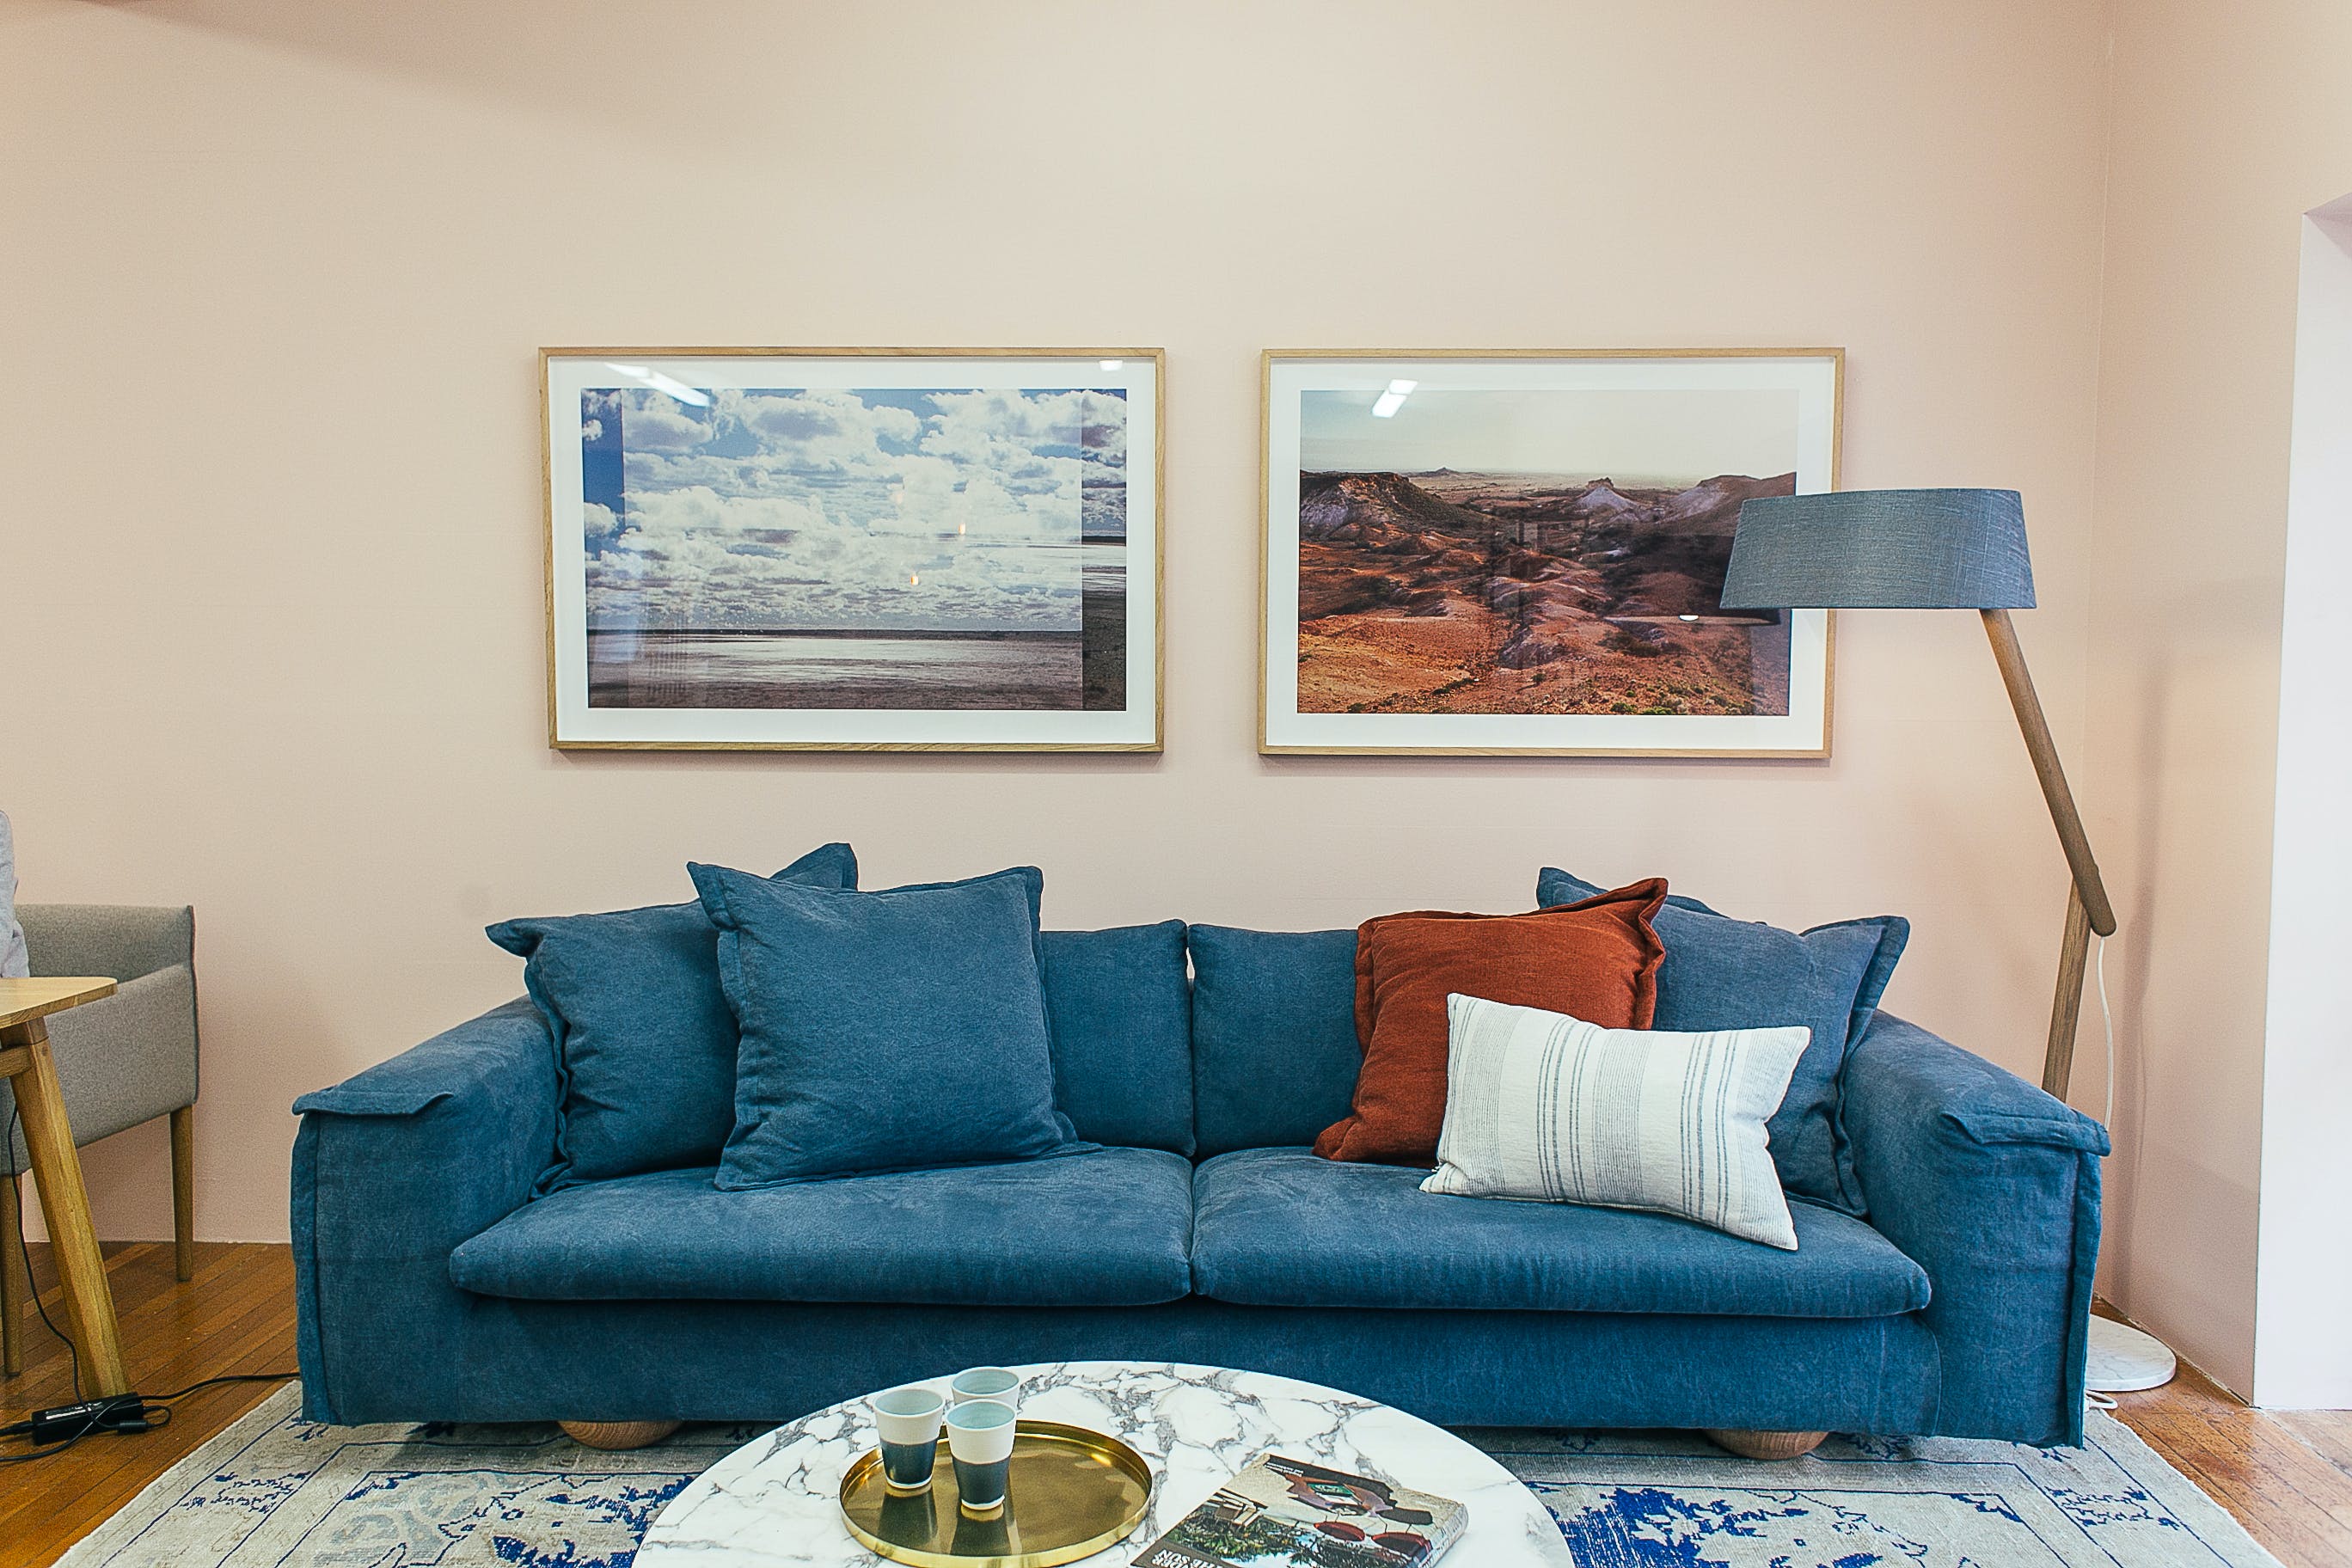 sofa living room ideas